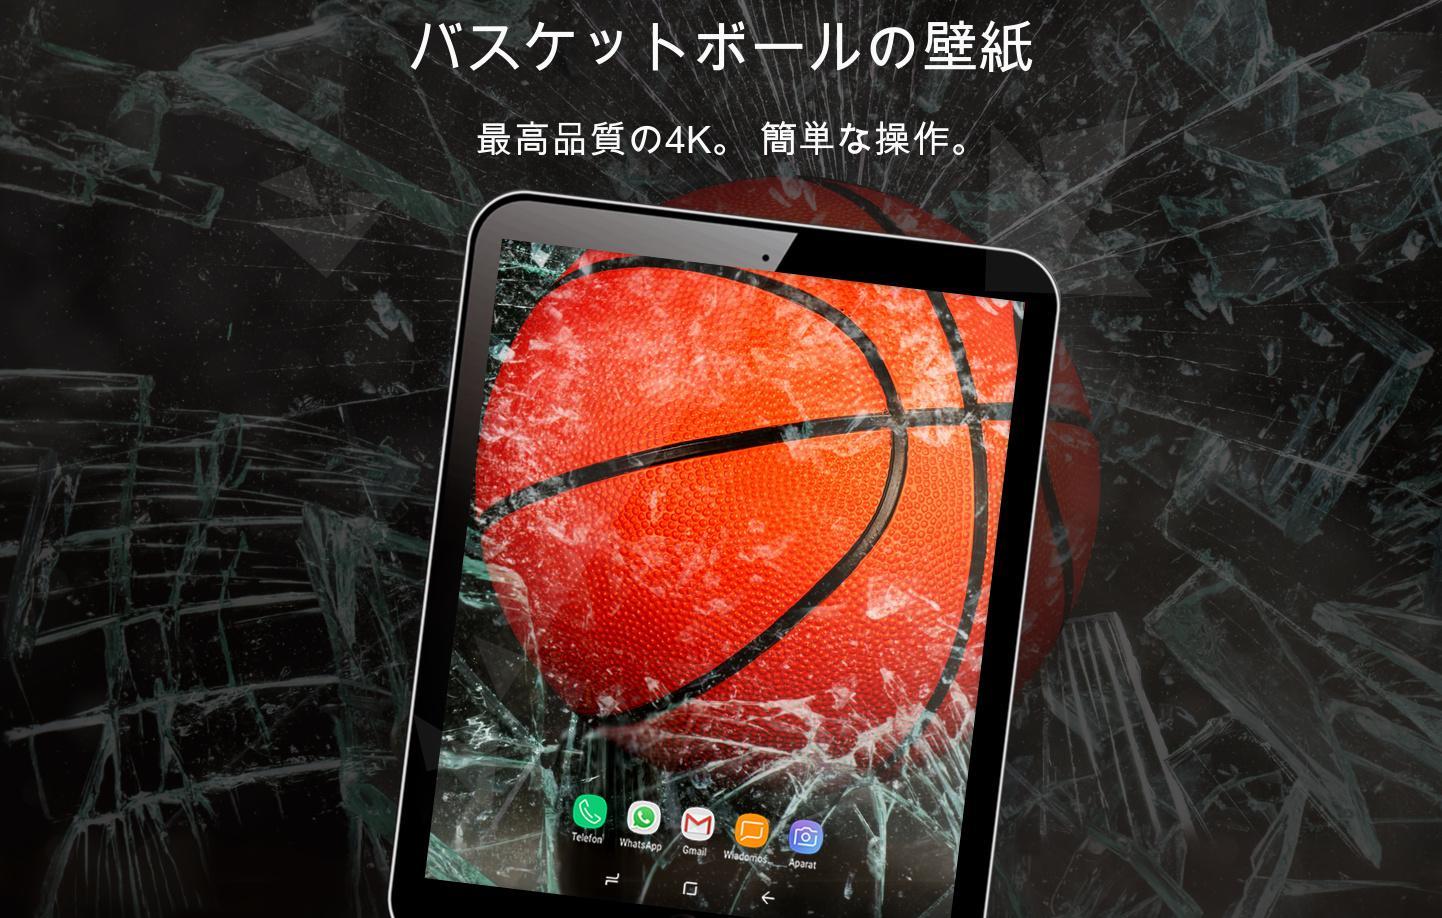 Android 用の バスケットボールの壁紙4k Apk をダウンロード